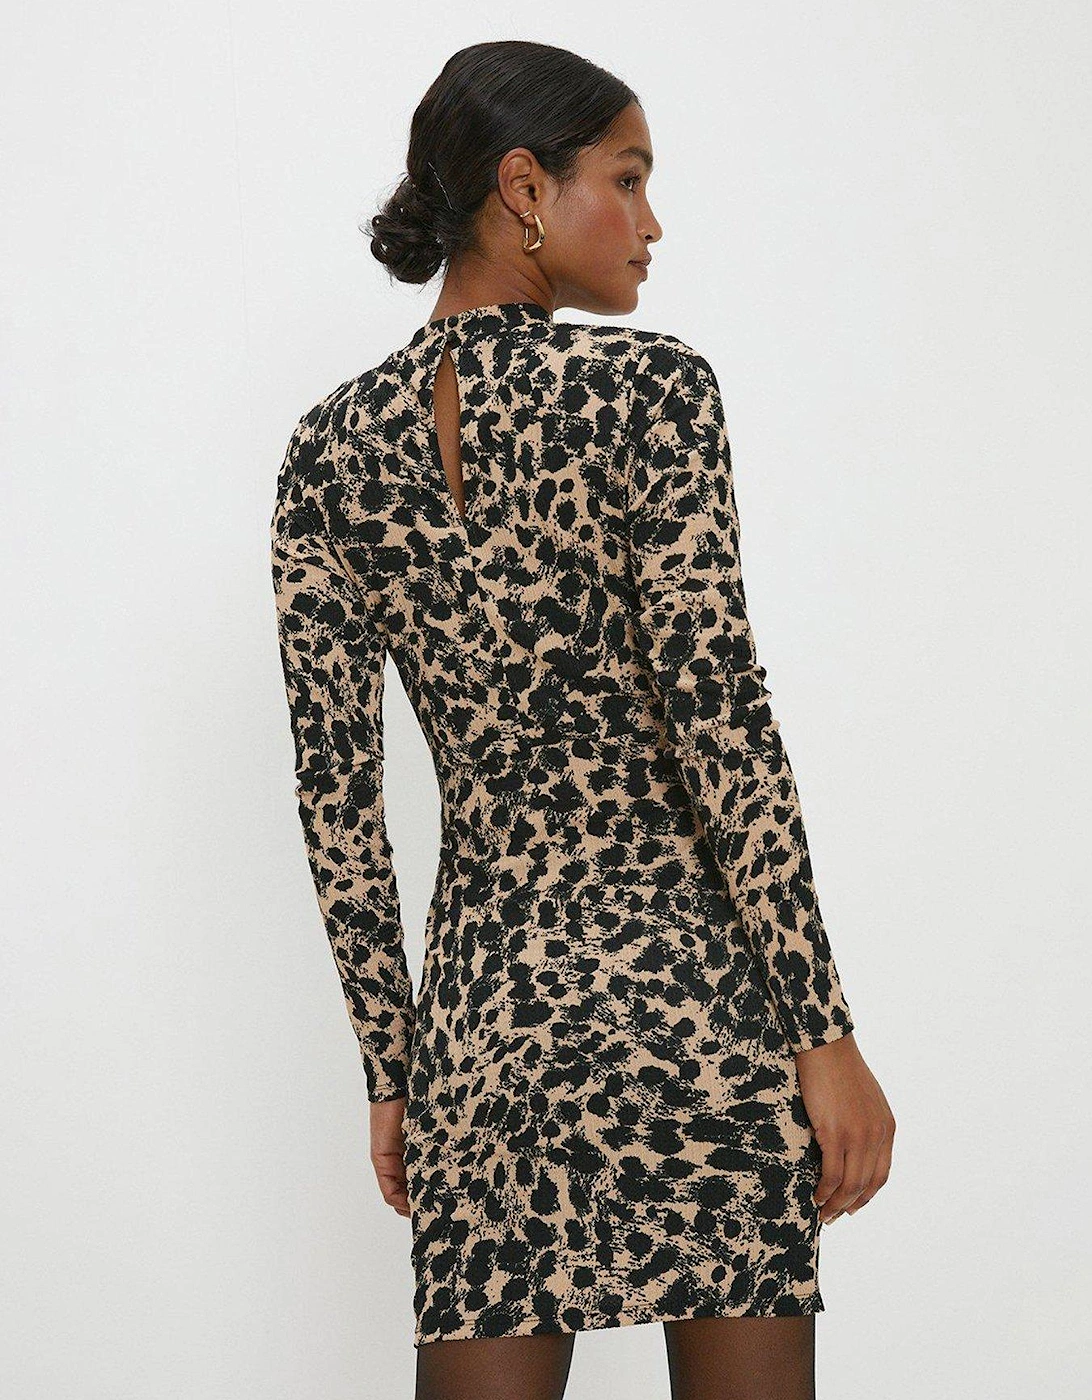 Wrap Skirt Mini Dress - Leopard Print